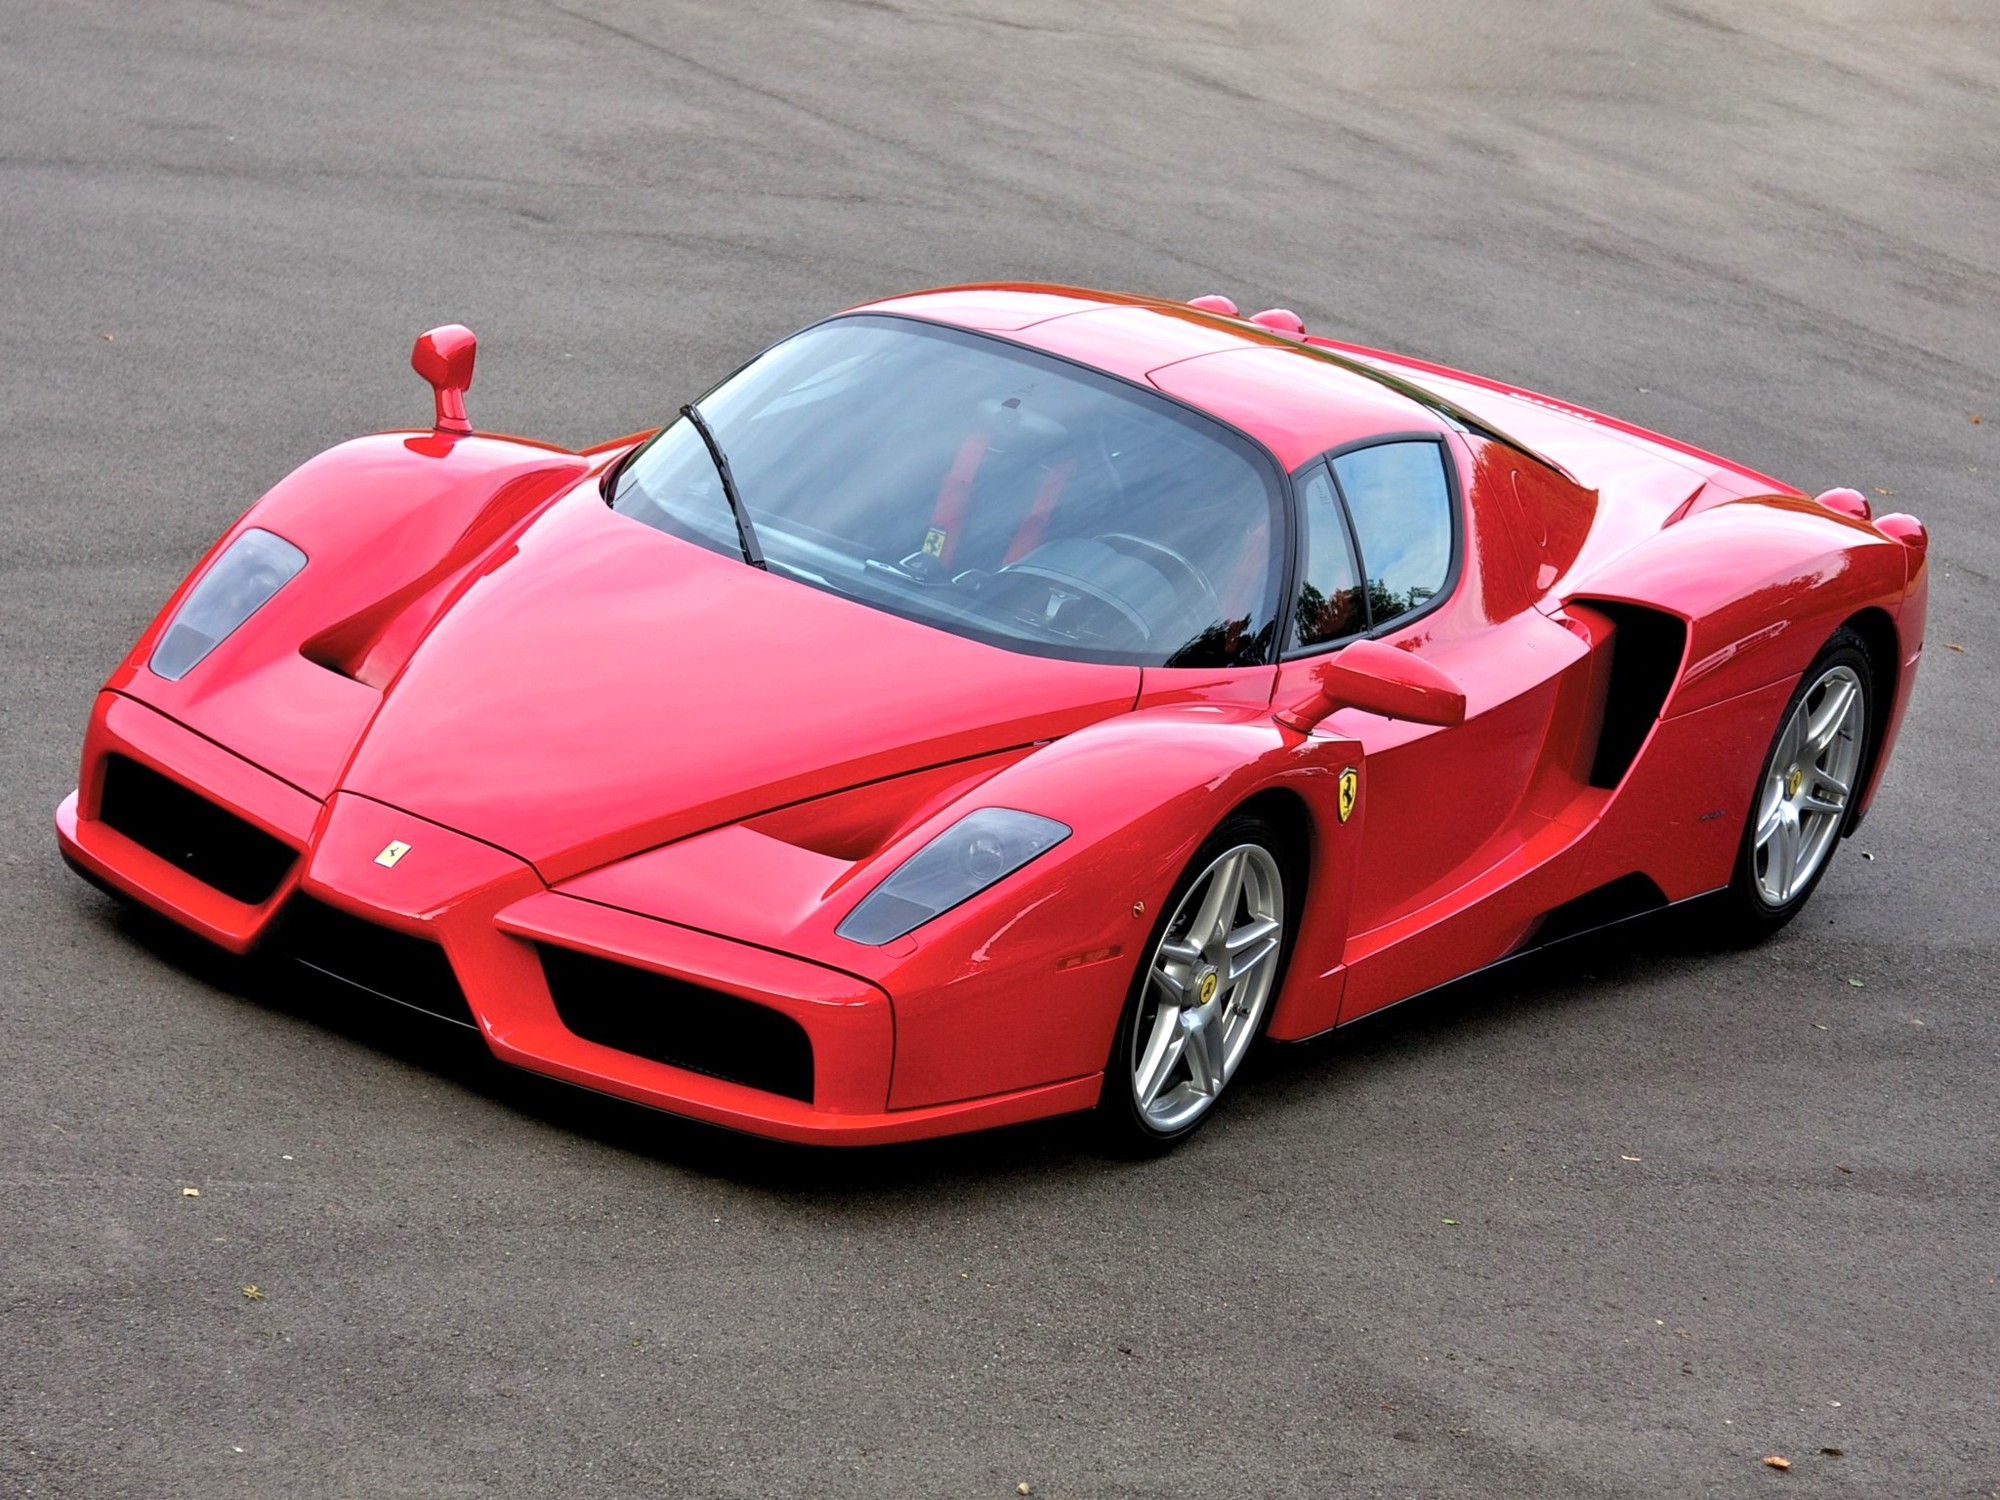 Этот Ferrari Enzo был списан после серьезной аварии